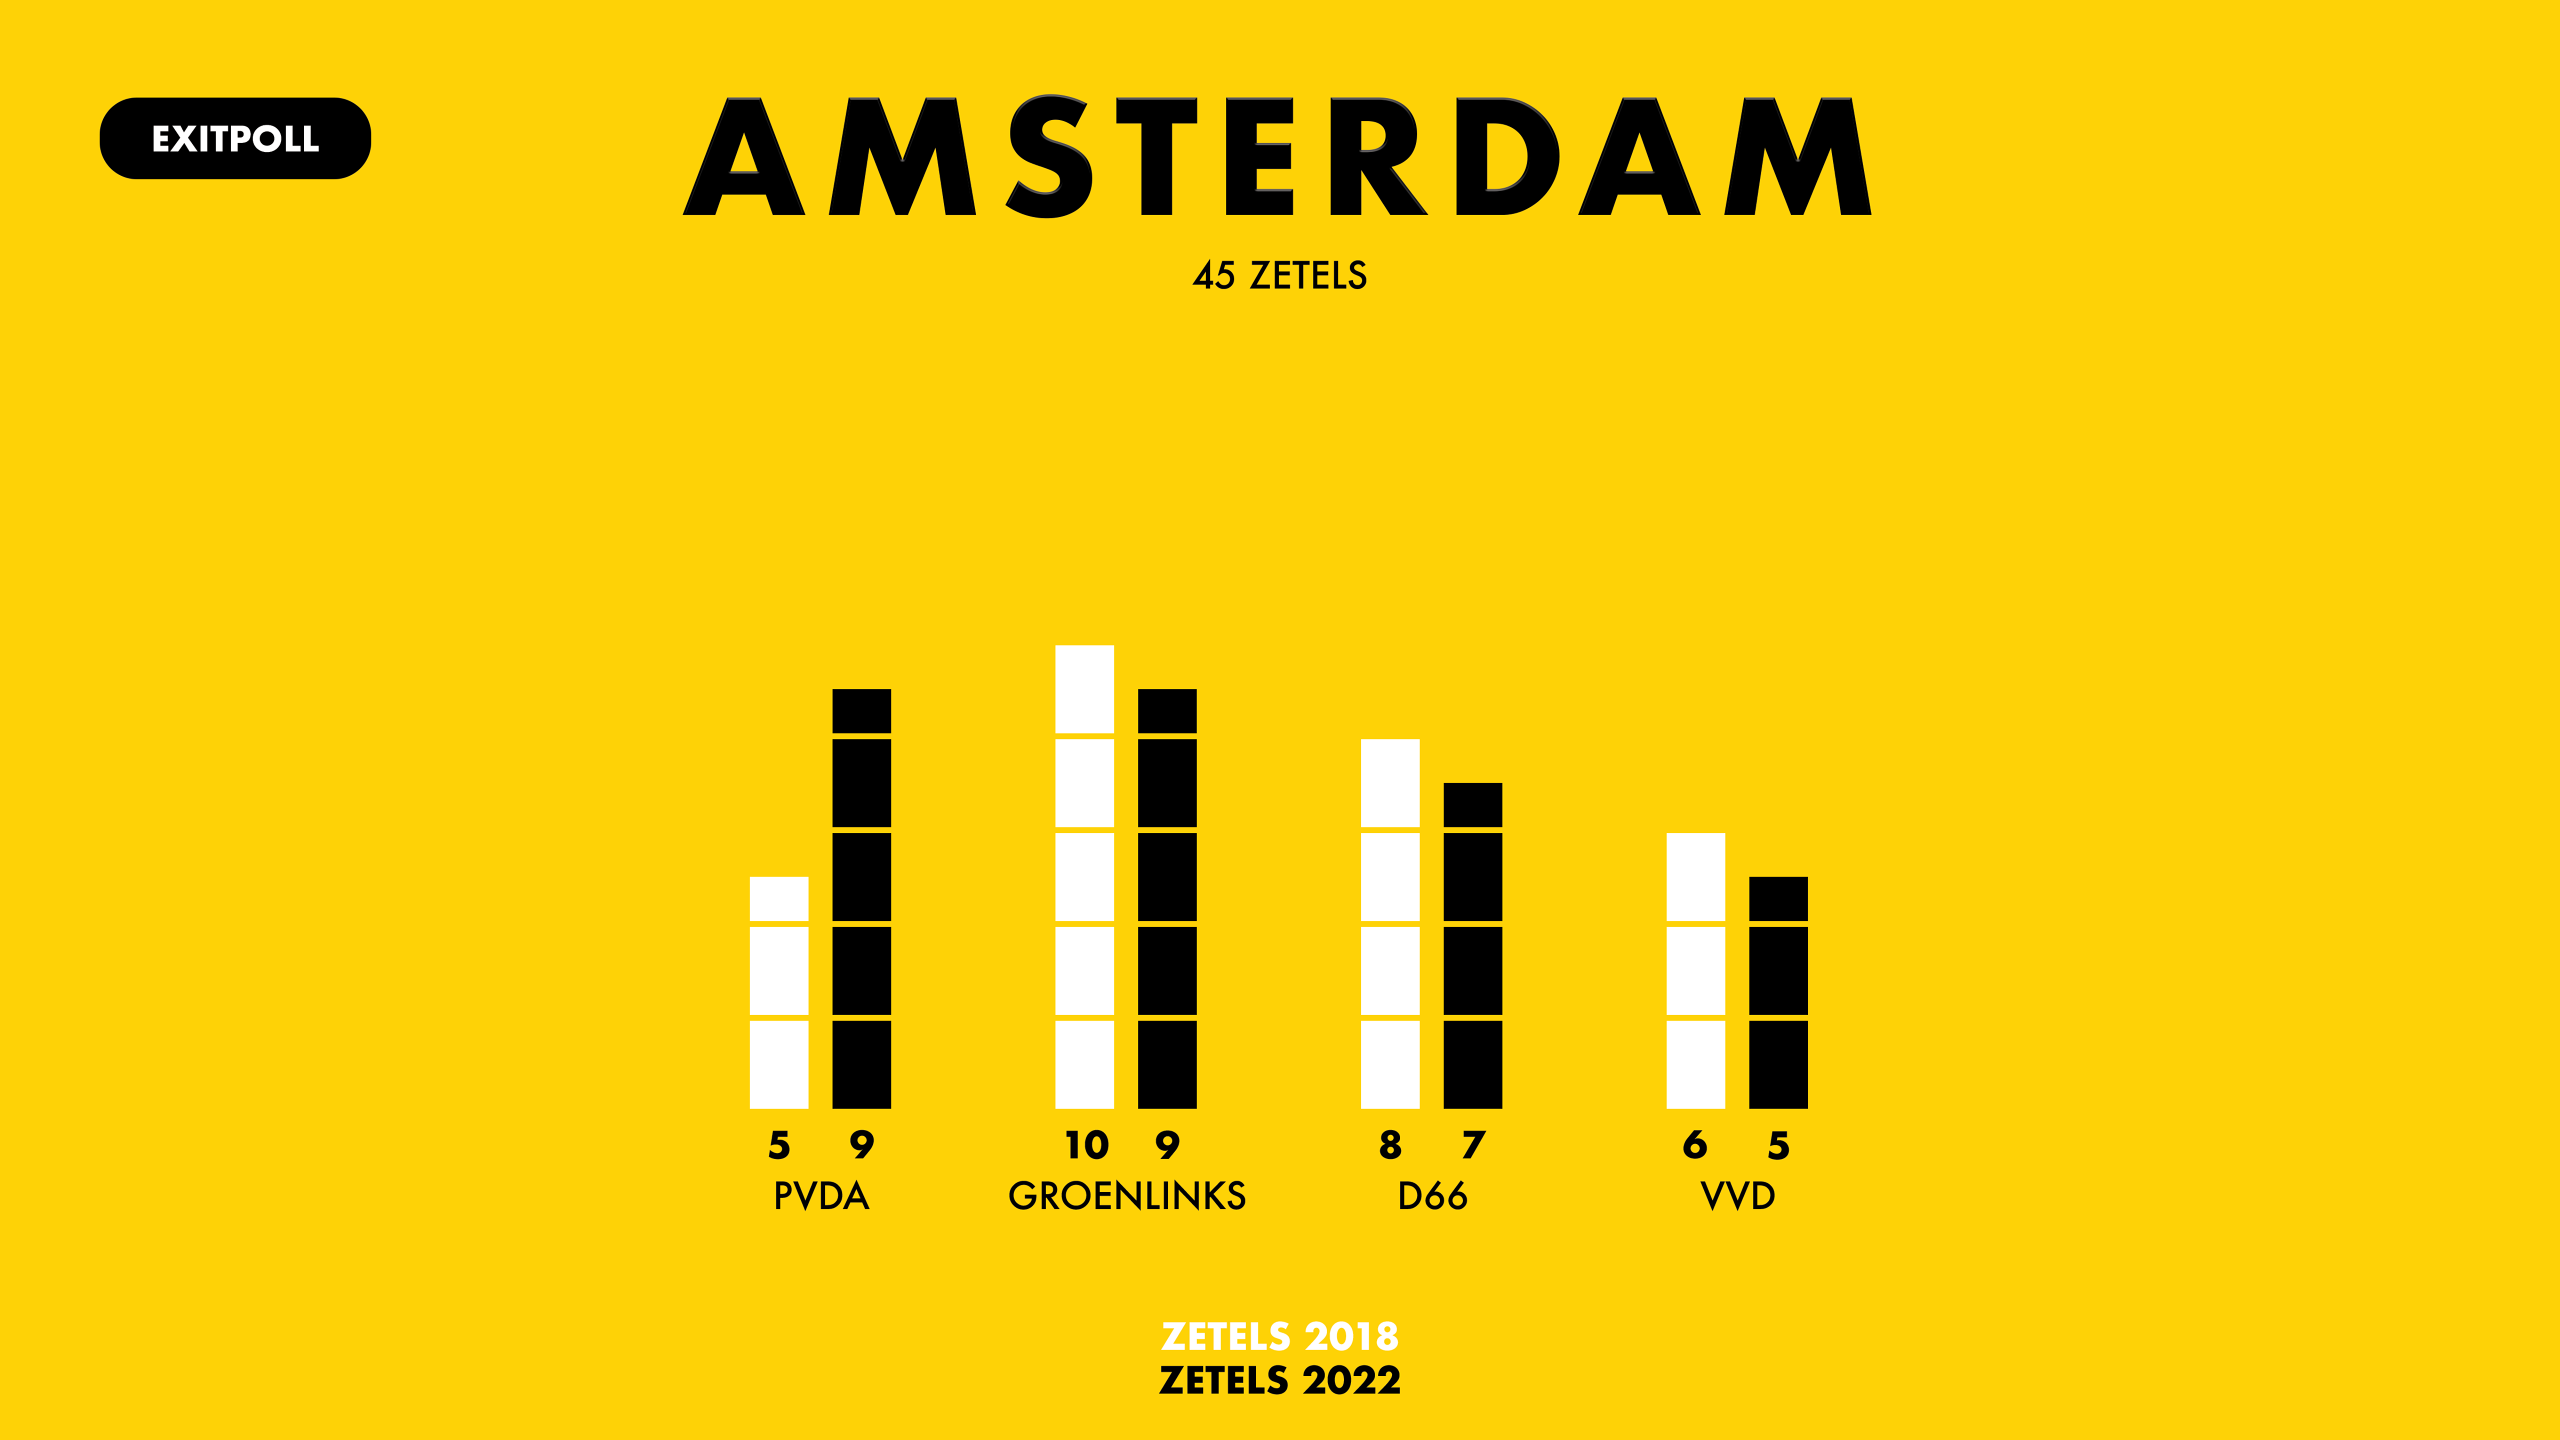 Het aantal zetels dat de vier grootste partijen in Amsterdam krijgt, op basis van de exitpoll van Ipsos in opdracht van de NOS.